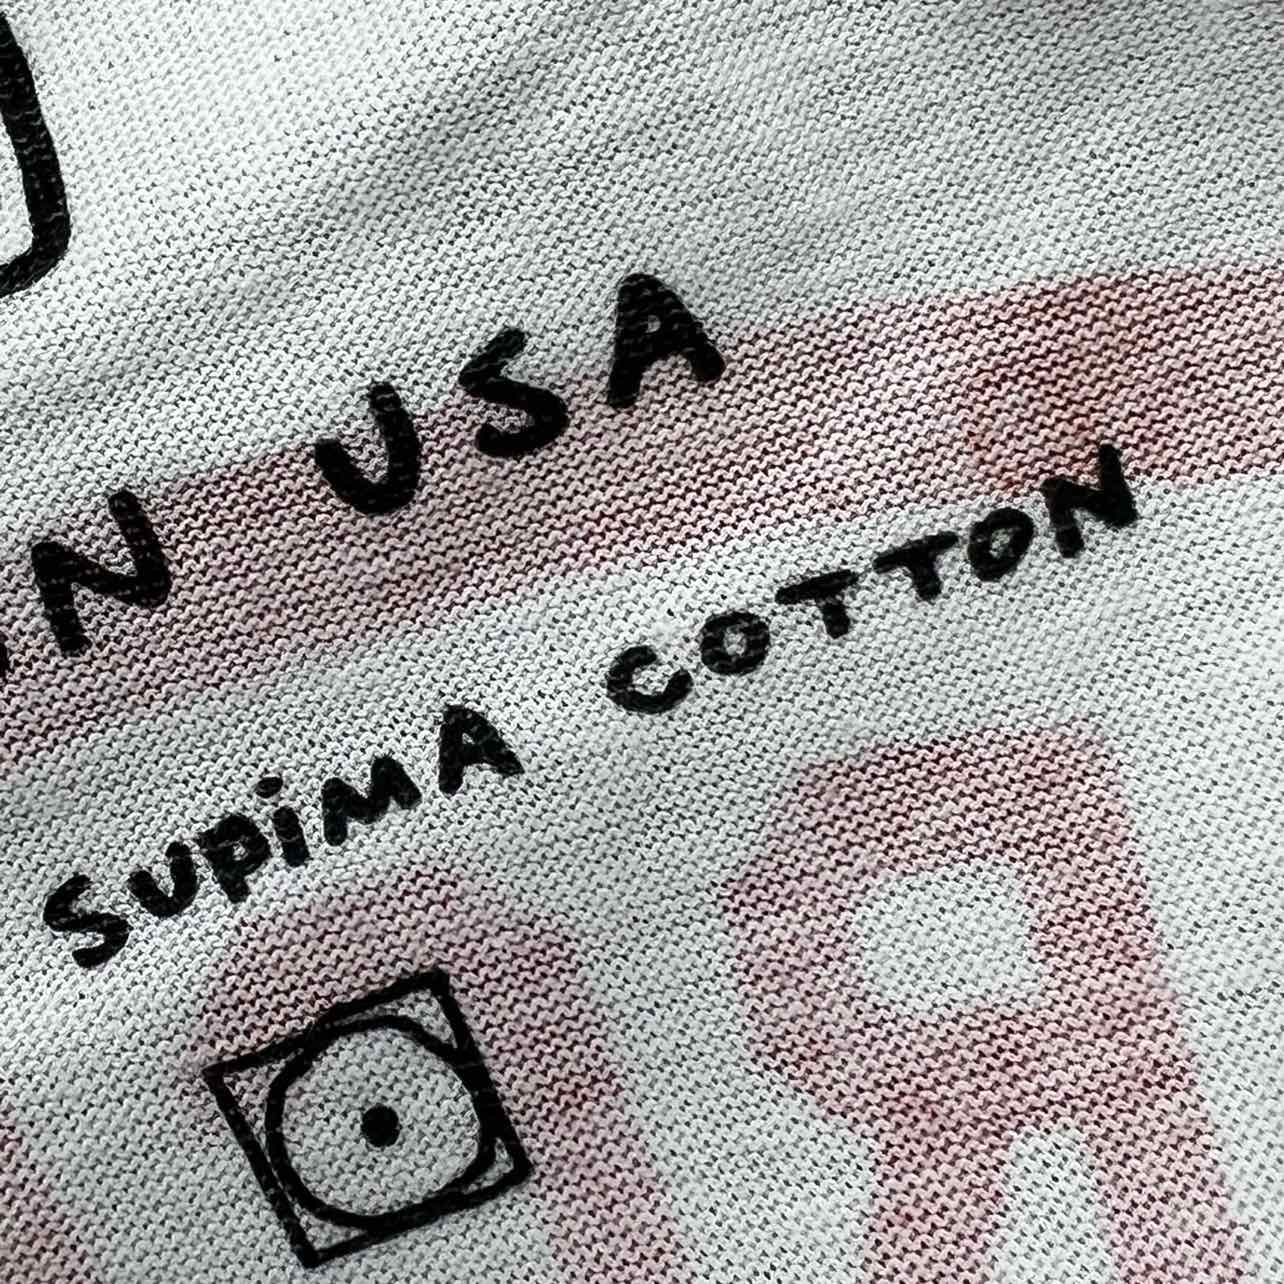 Tom Sachs T-Shirt &quot;NASA&quot; White New Size S